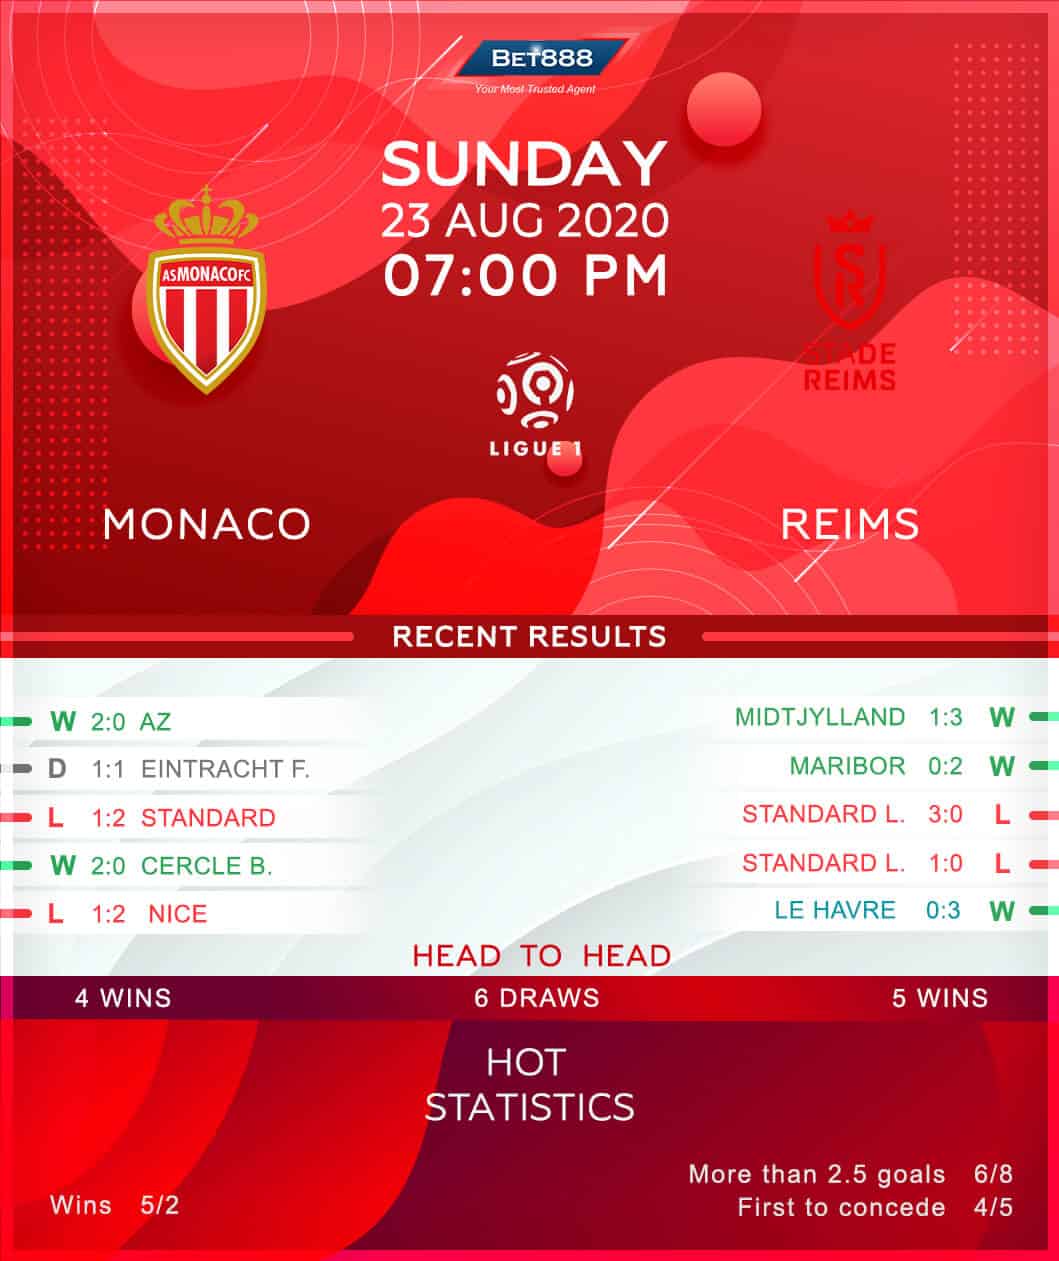 Monaco vs Reims 23/08/20